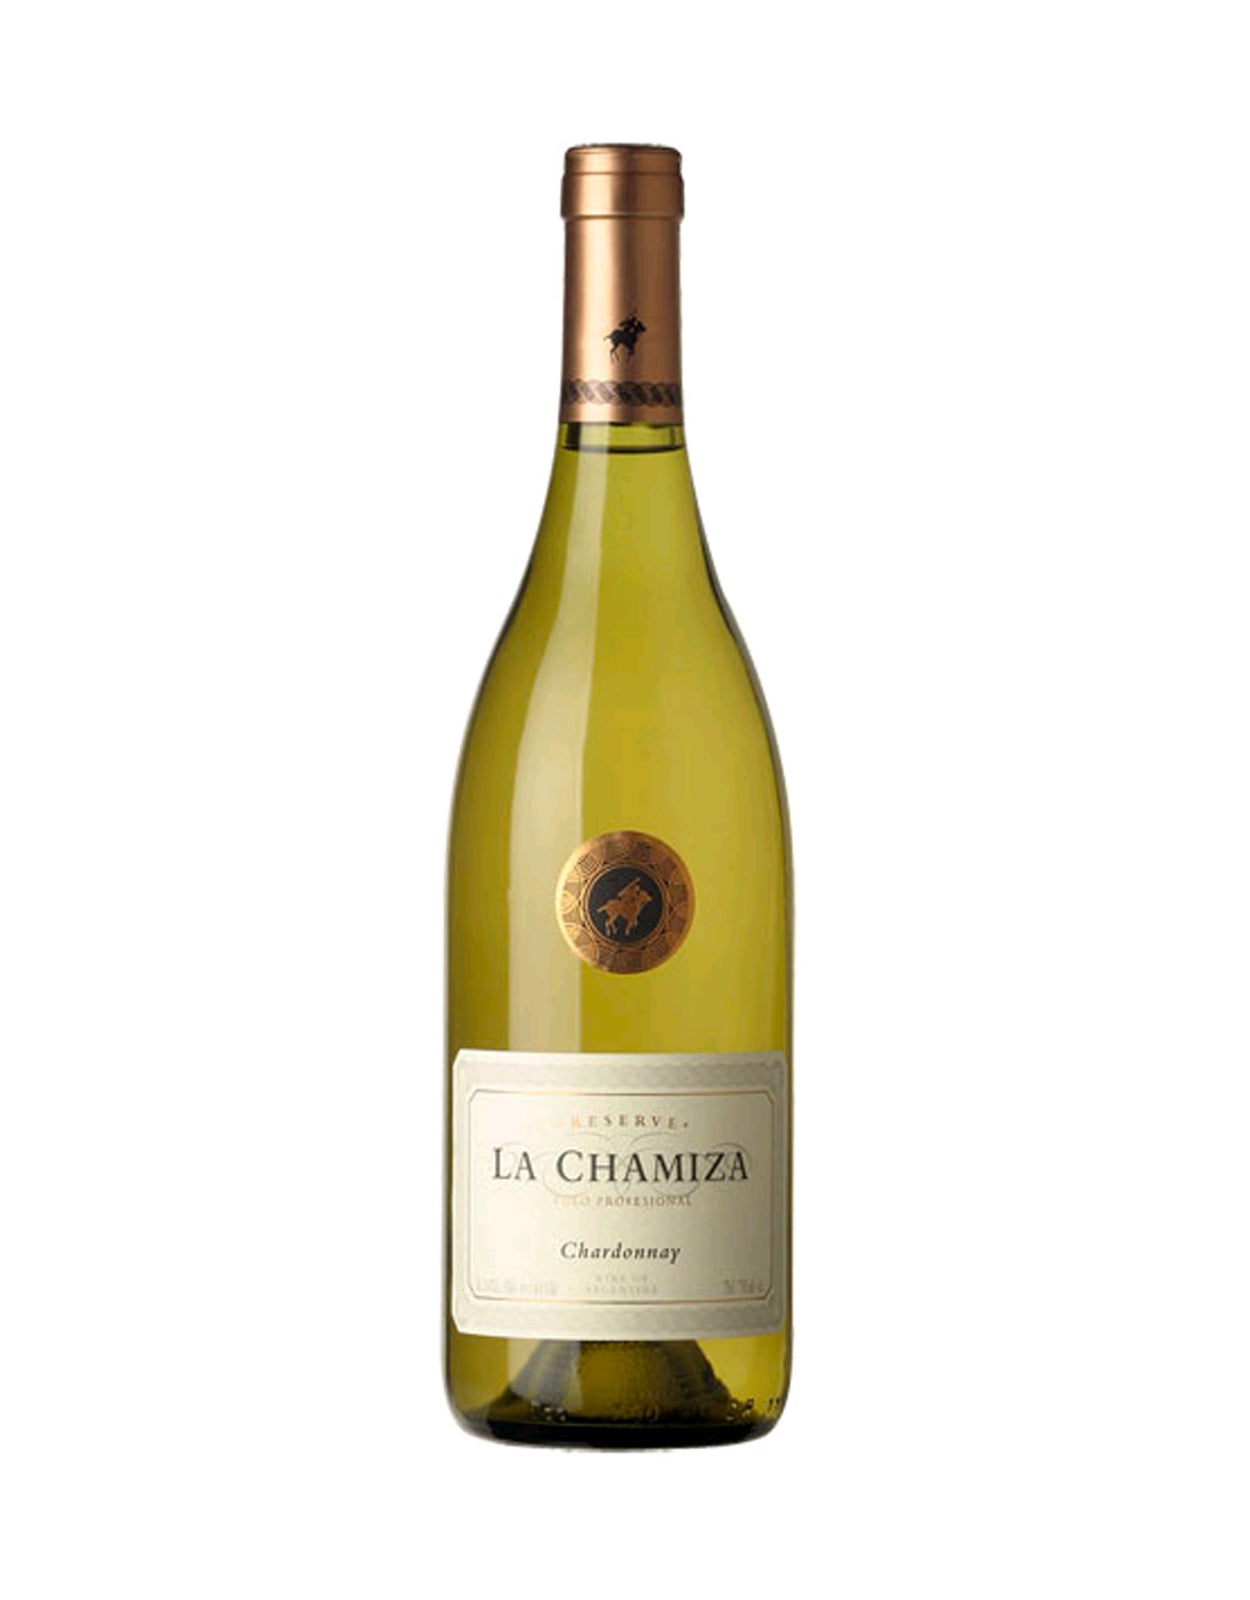 La Chamiza Chardonnay